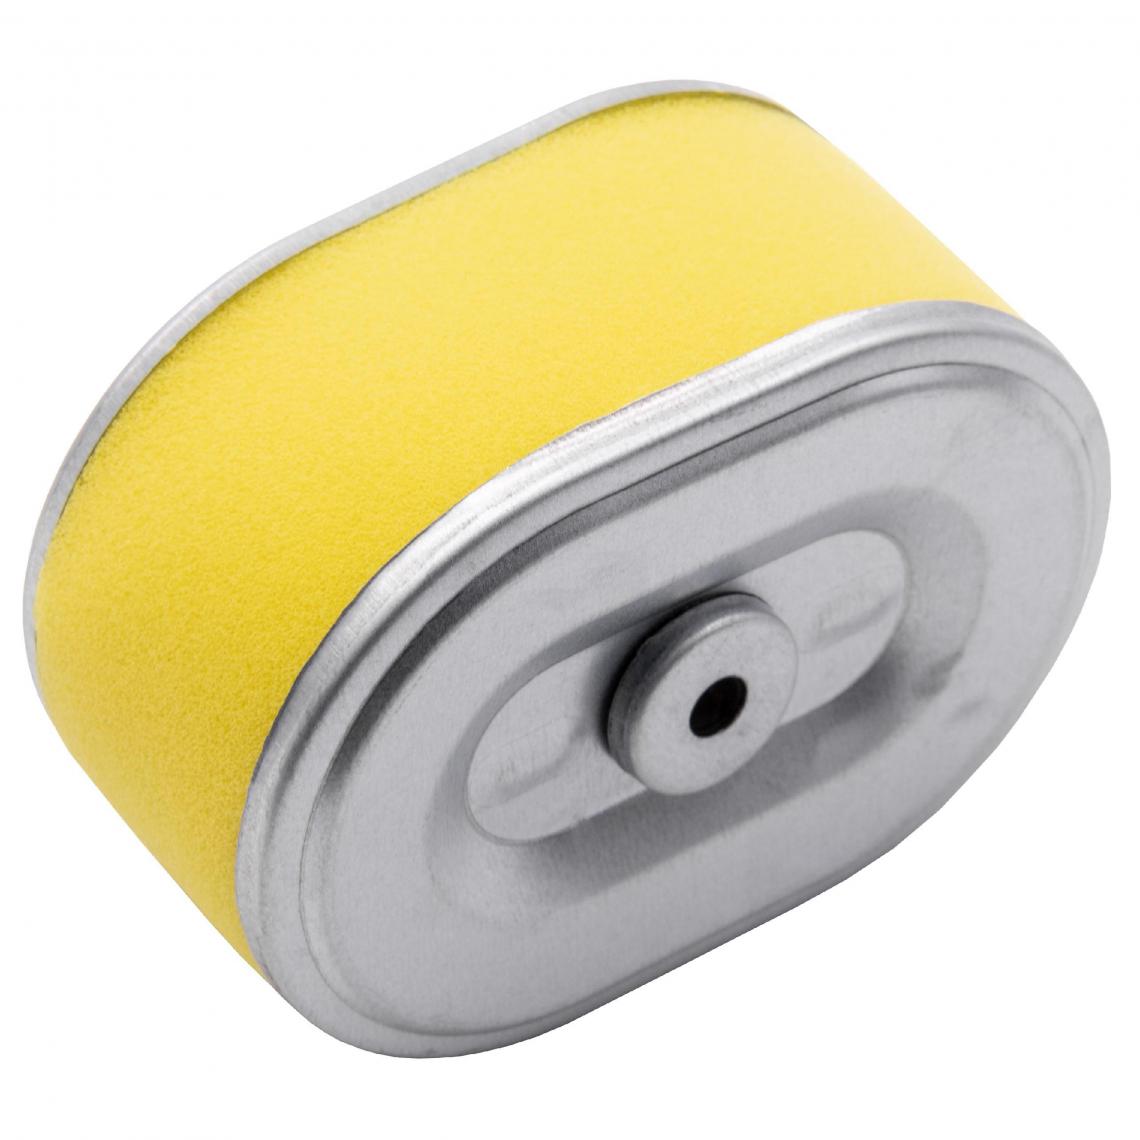 Vhbw - vhbw Filtre à air avec préfiltre de rechange jaune, argent remplace Lesco 034182 compatible avec tondeuse à gazon; 10,1 x 7,2 x 5,1cm - Accessoires tondeuses